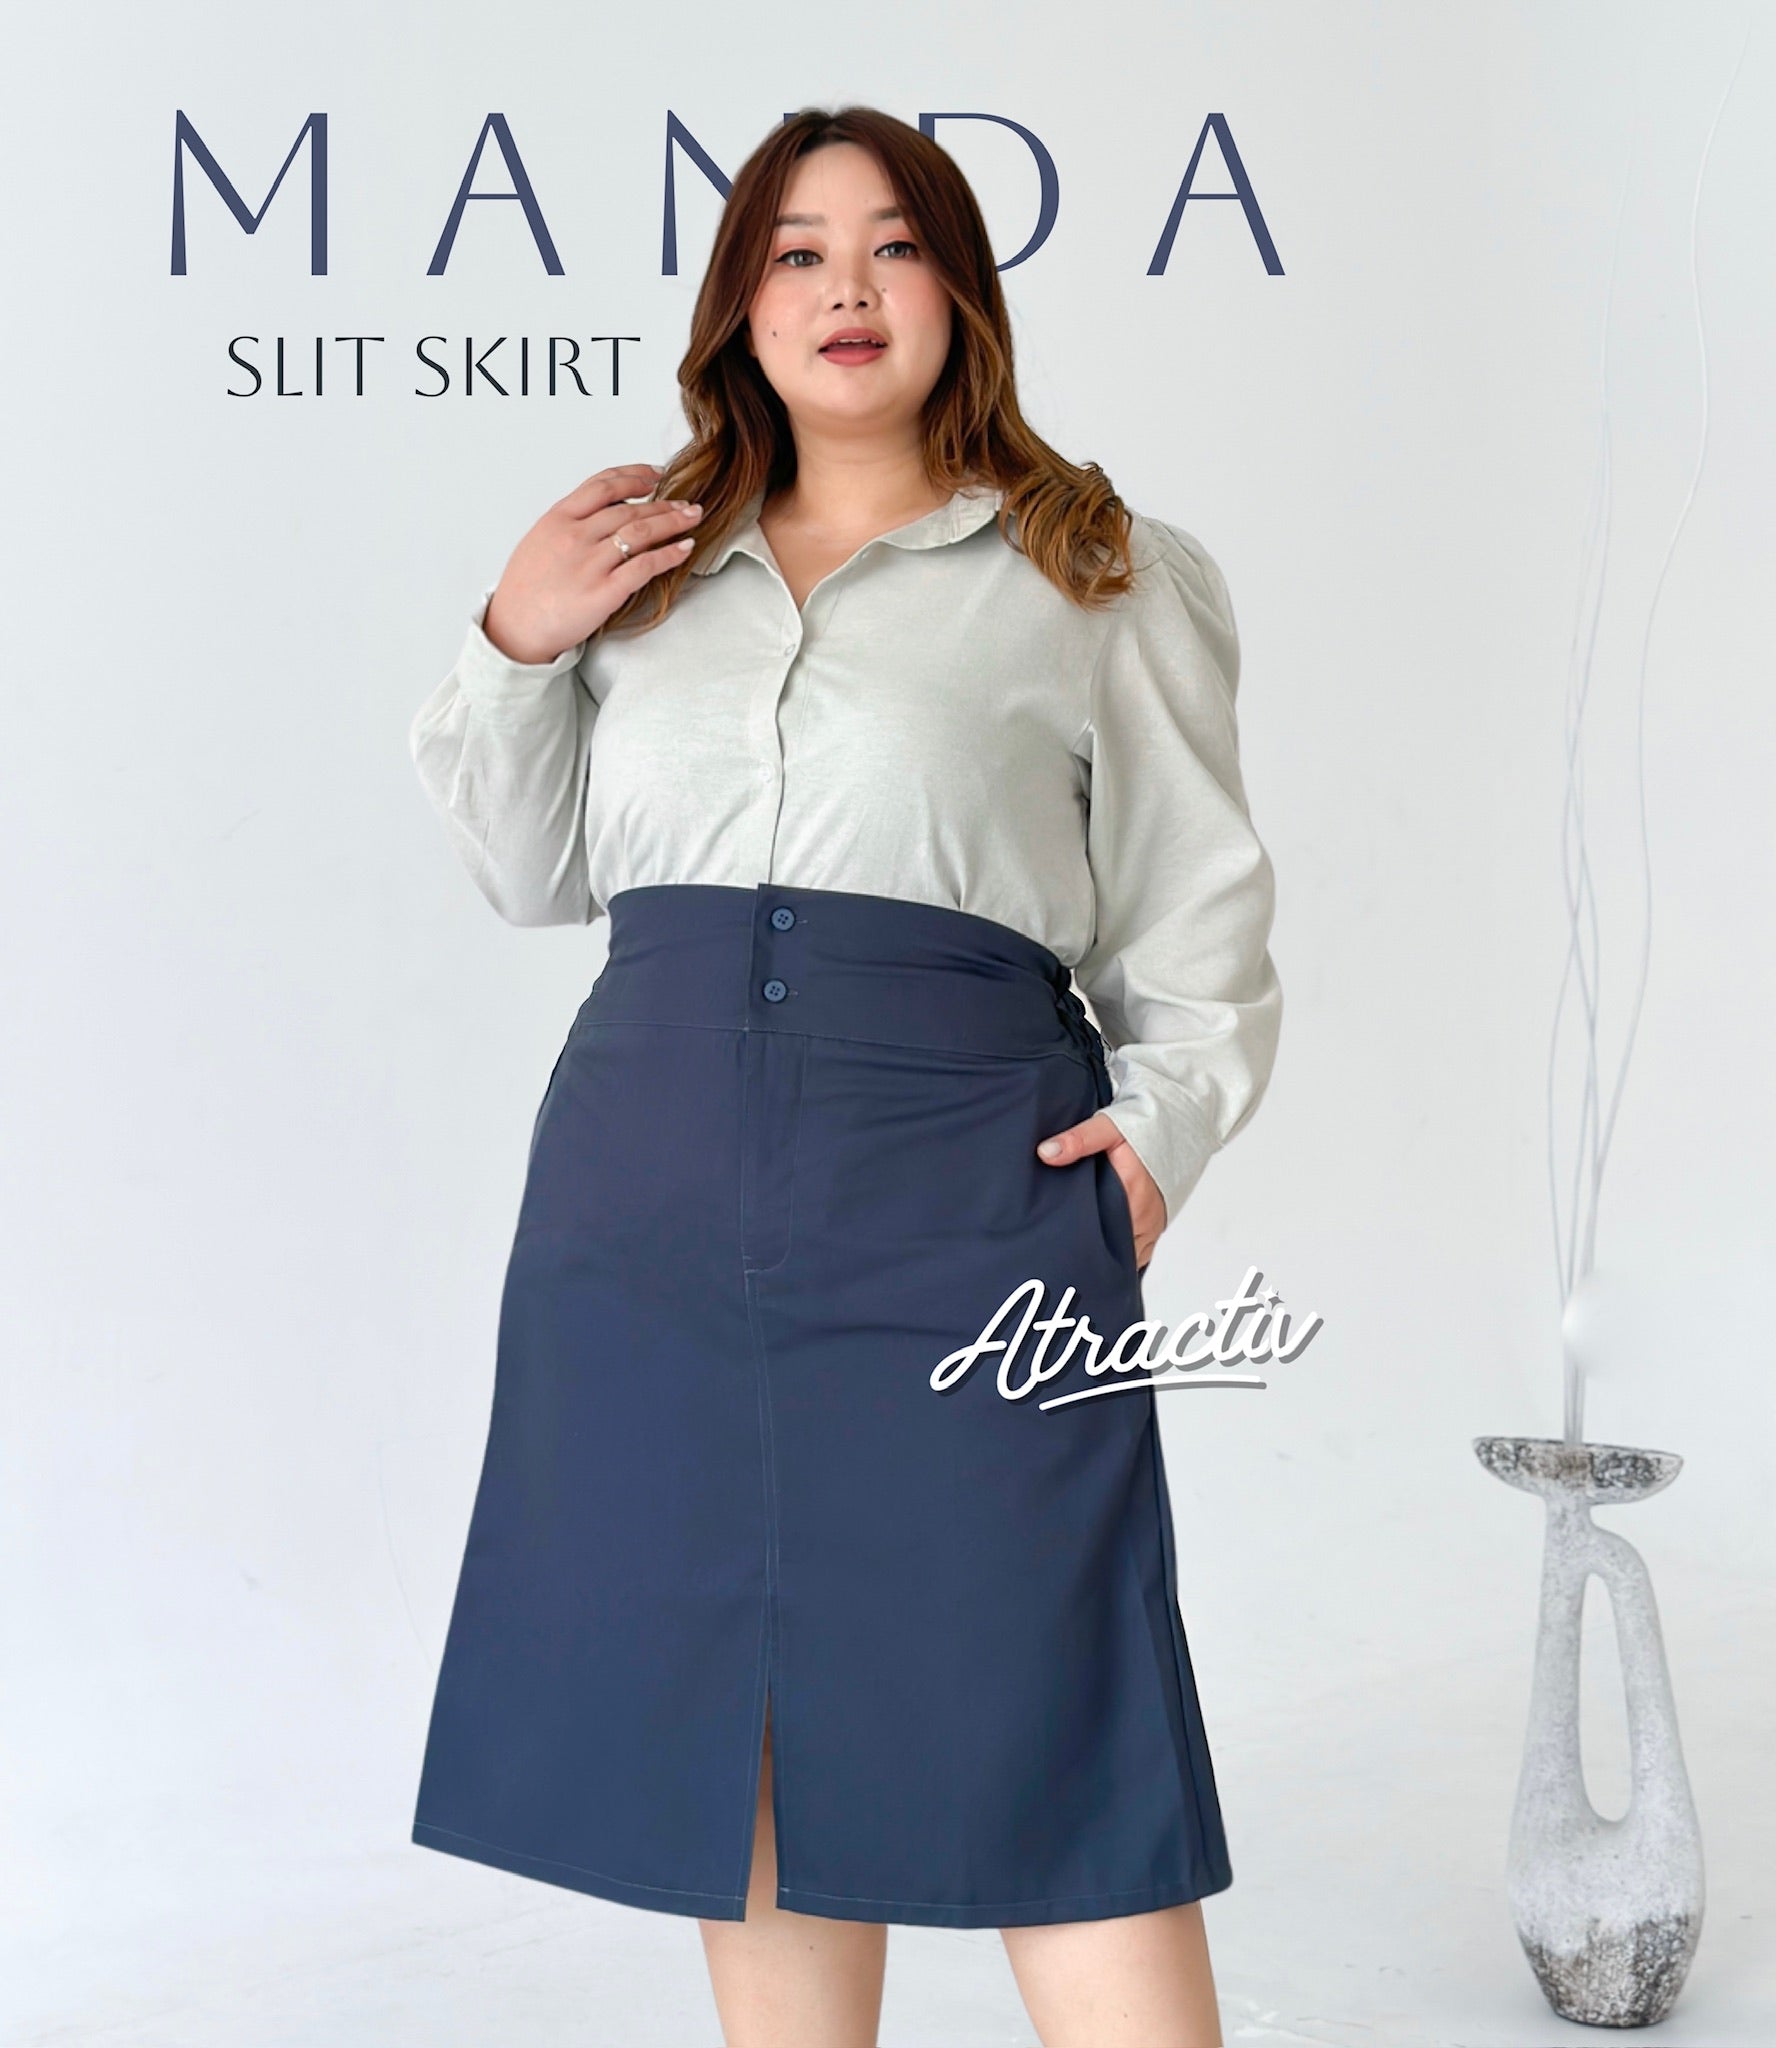 Manda Skirt